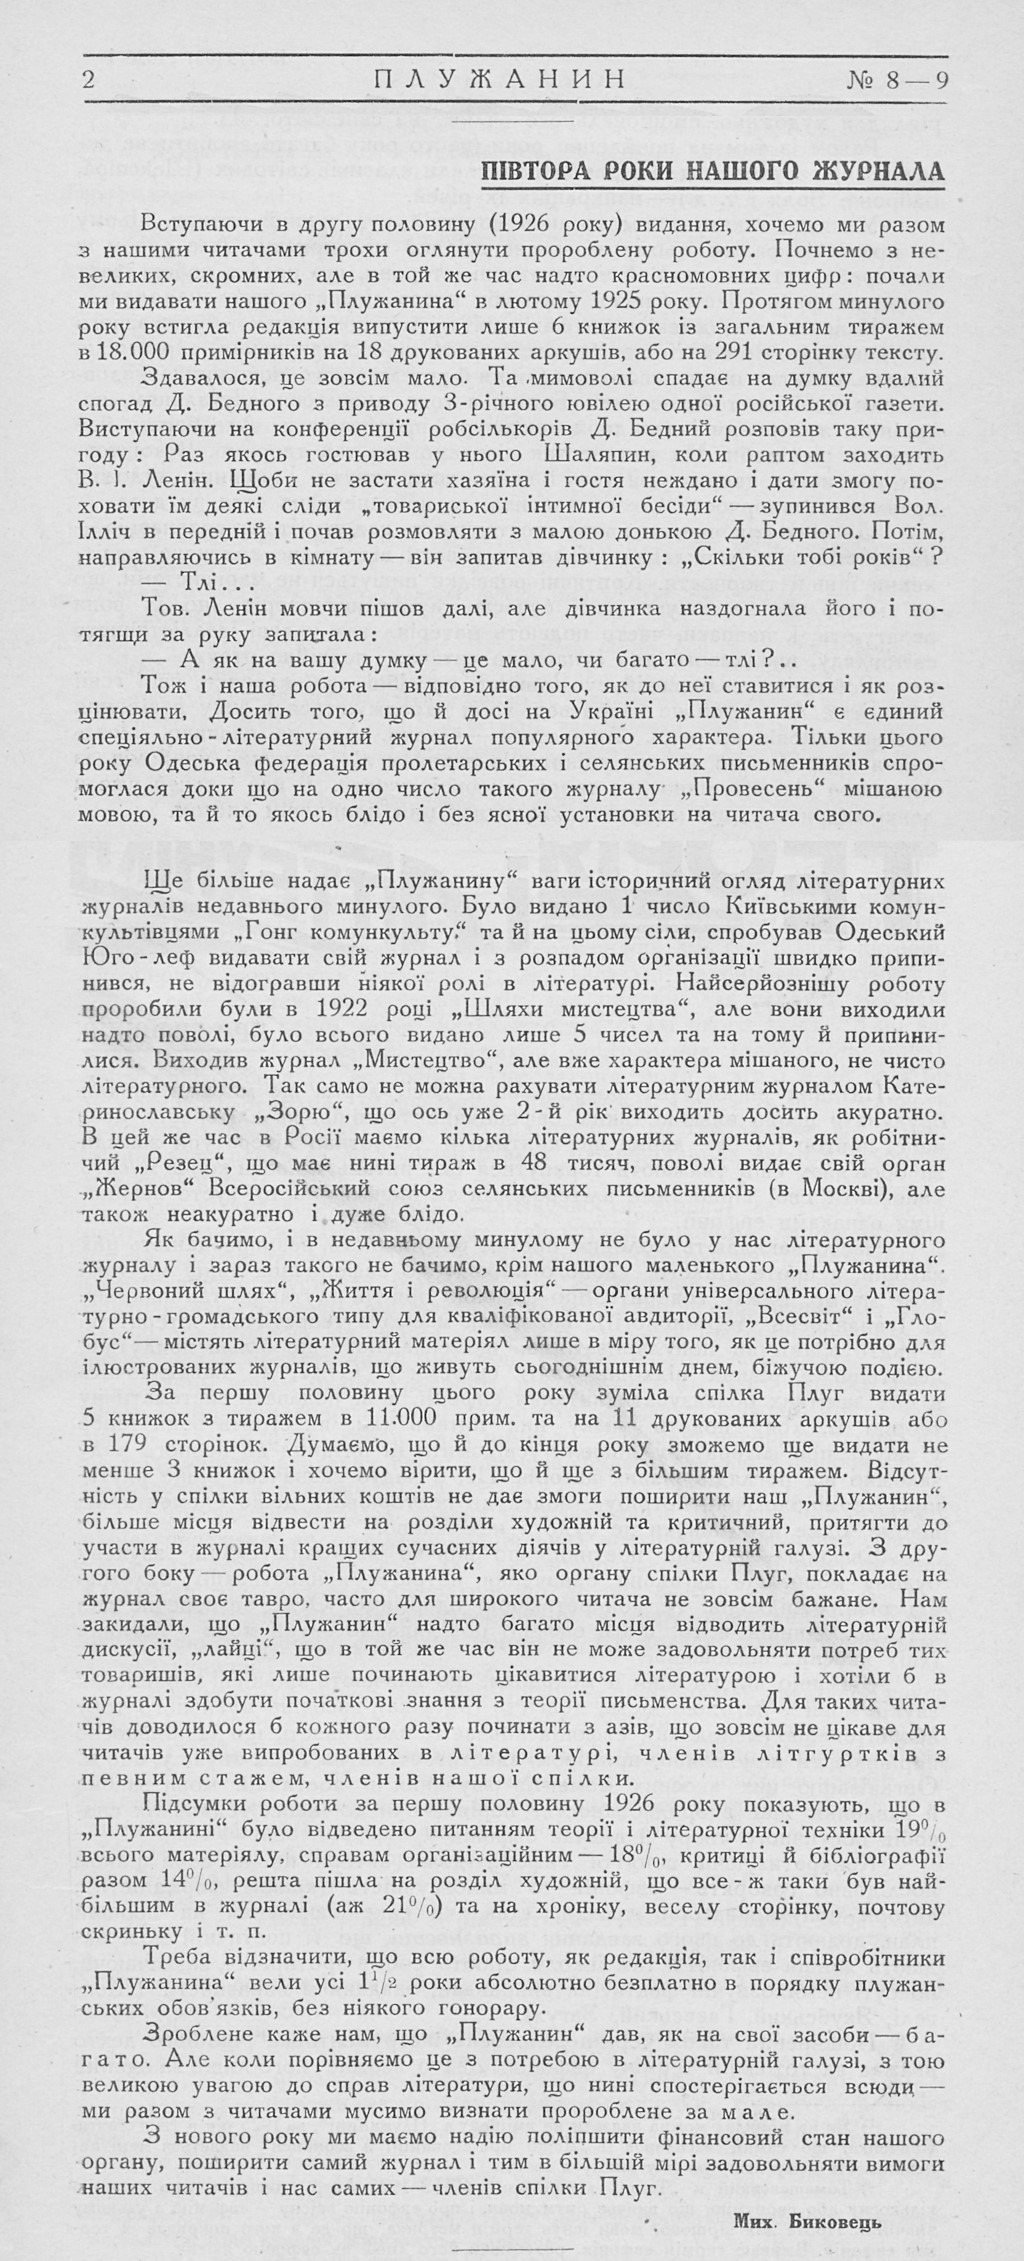 Плужанин №8/9  (серпень-вересень 1926) // libraria.ua